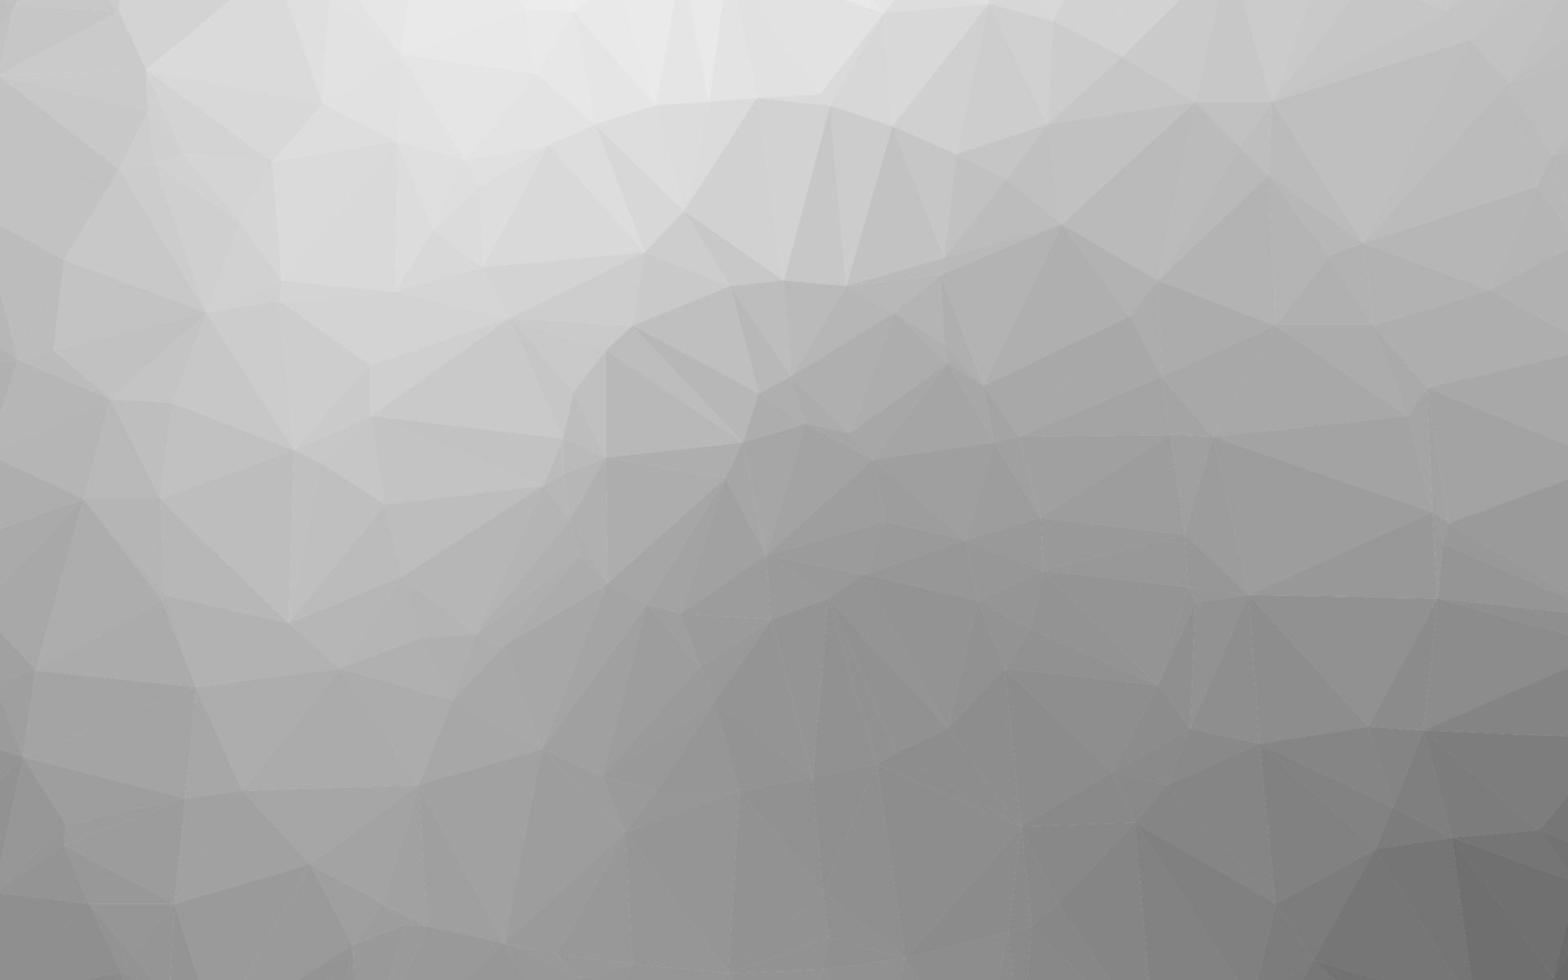 Light Silver, Gray vector polygon abstract backdrop.